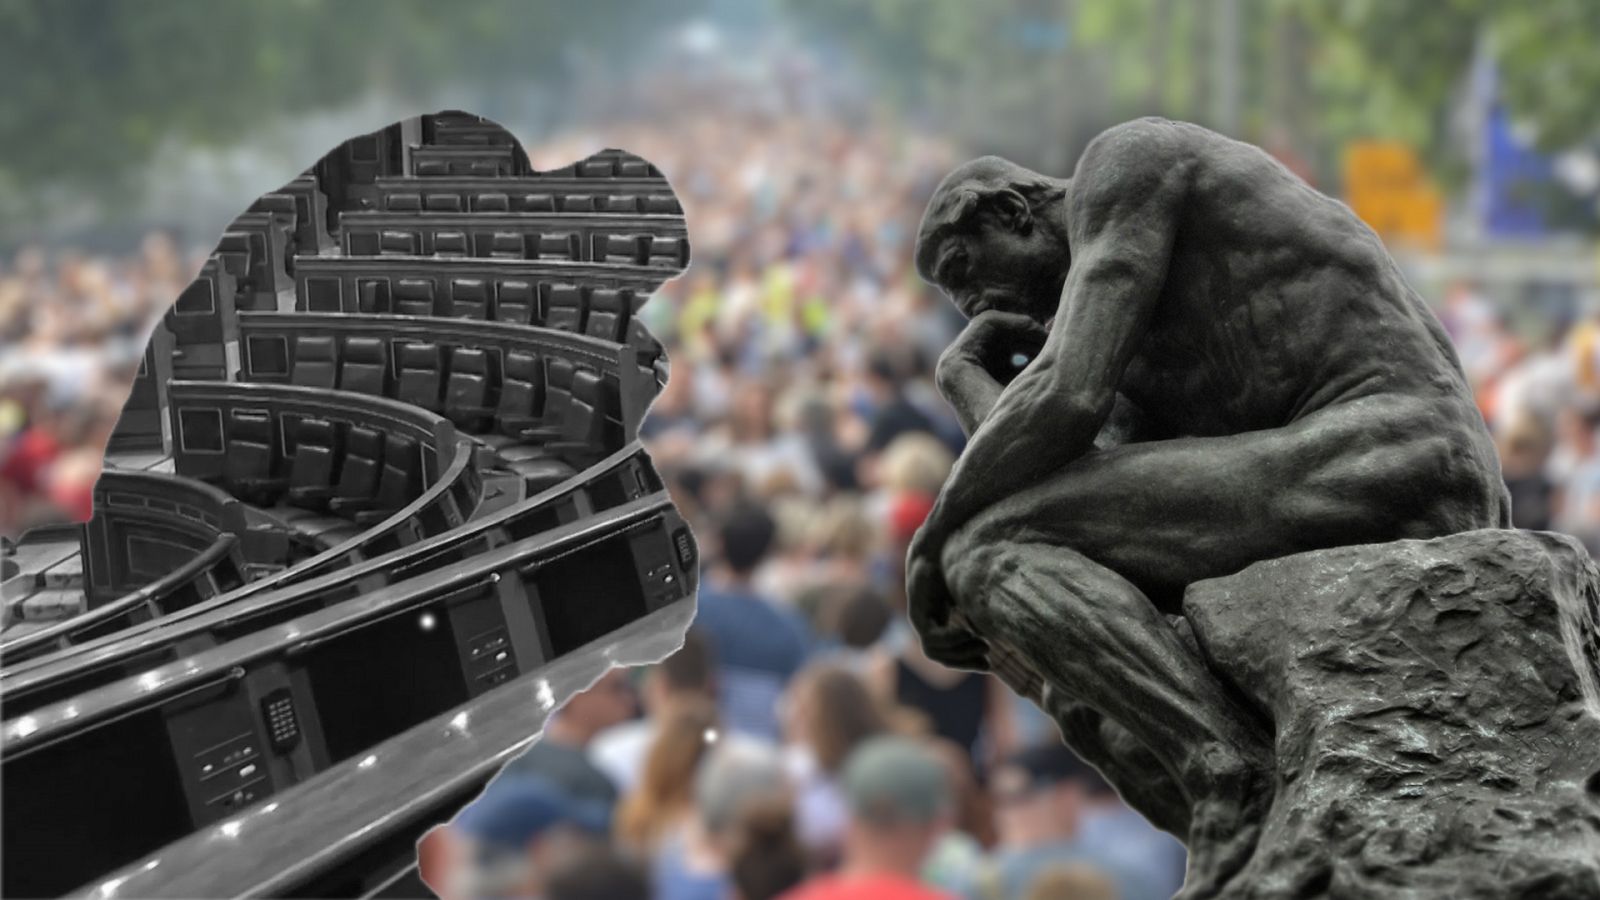  Escultura del pensador enfrentada a sí misma en una versión que siluetea el congreso de los diputados sobre una imagen de fondo de una manifestación masiva.